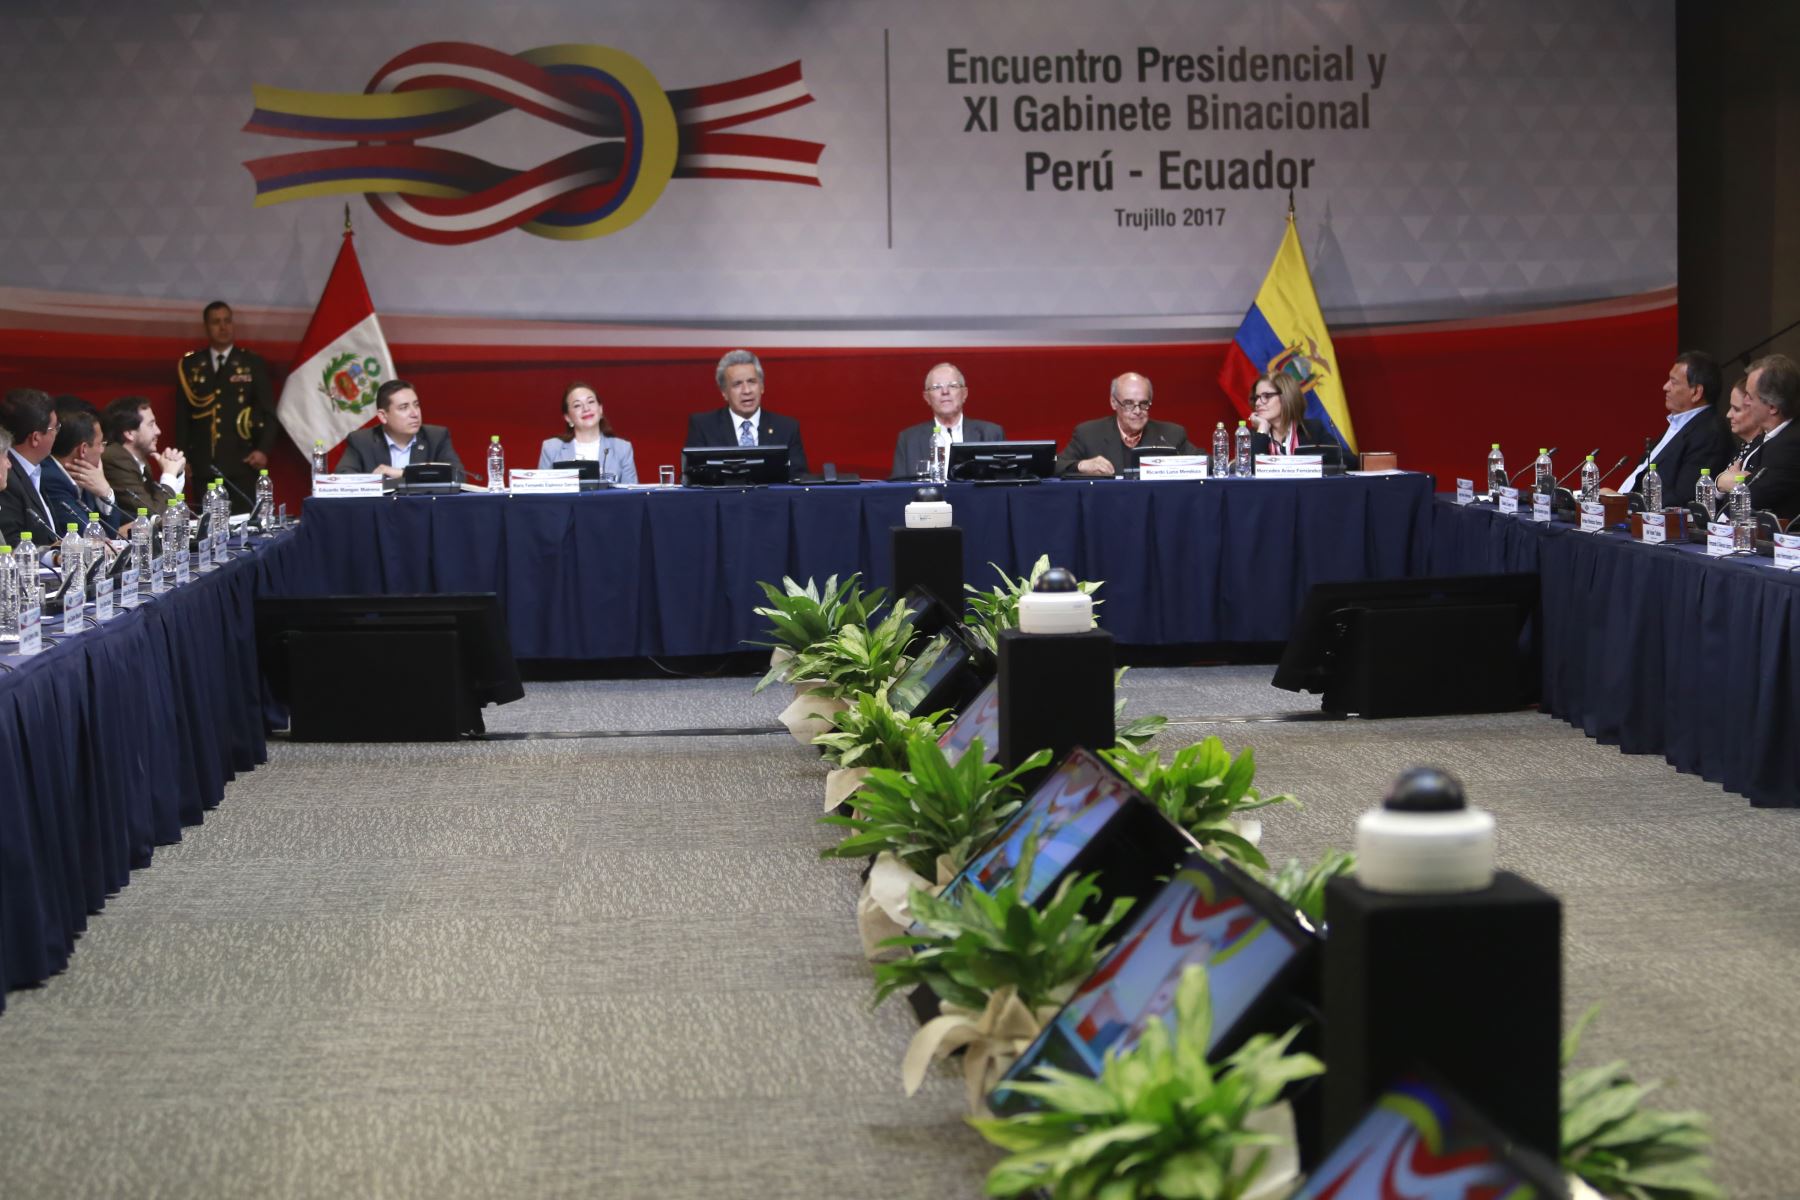 Los jefes de Estado de Perú, Pedro Pablo Kuczynski, y de Ecuador, Lenín Moreno, presiden  en Trujillo, región La Libertad, el XI Gabinete Binacional. Foto: ANDINA/ Prensa Presidencia